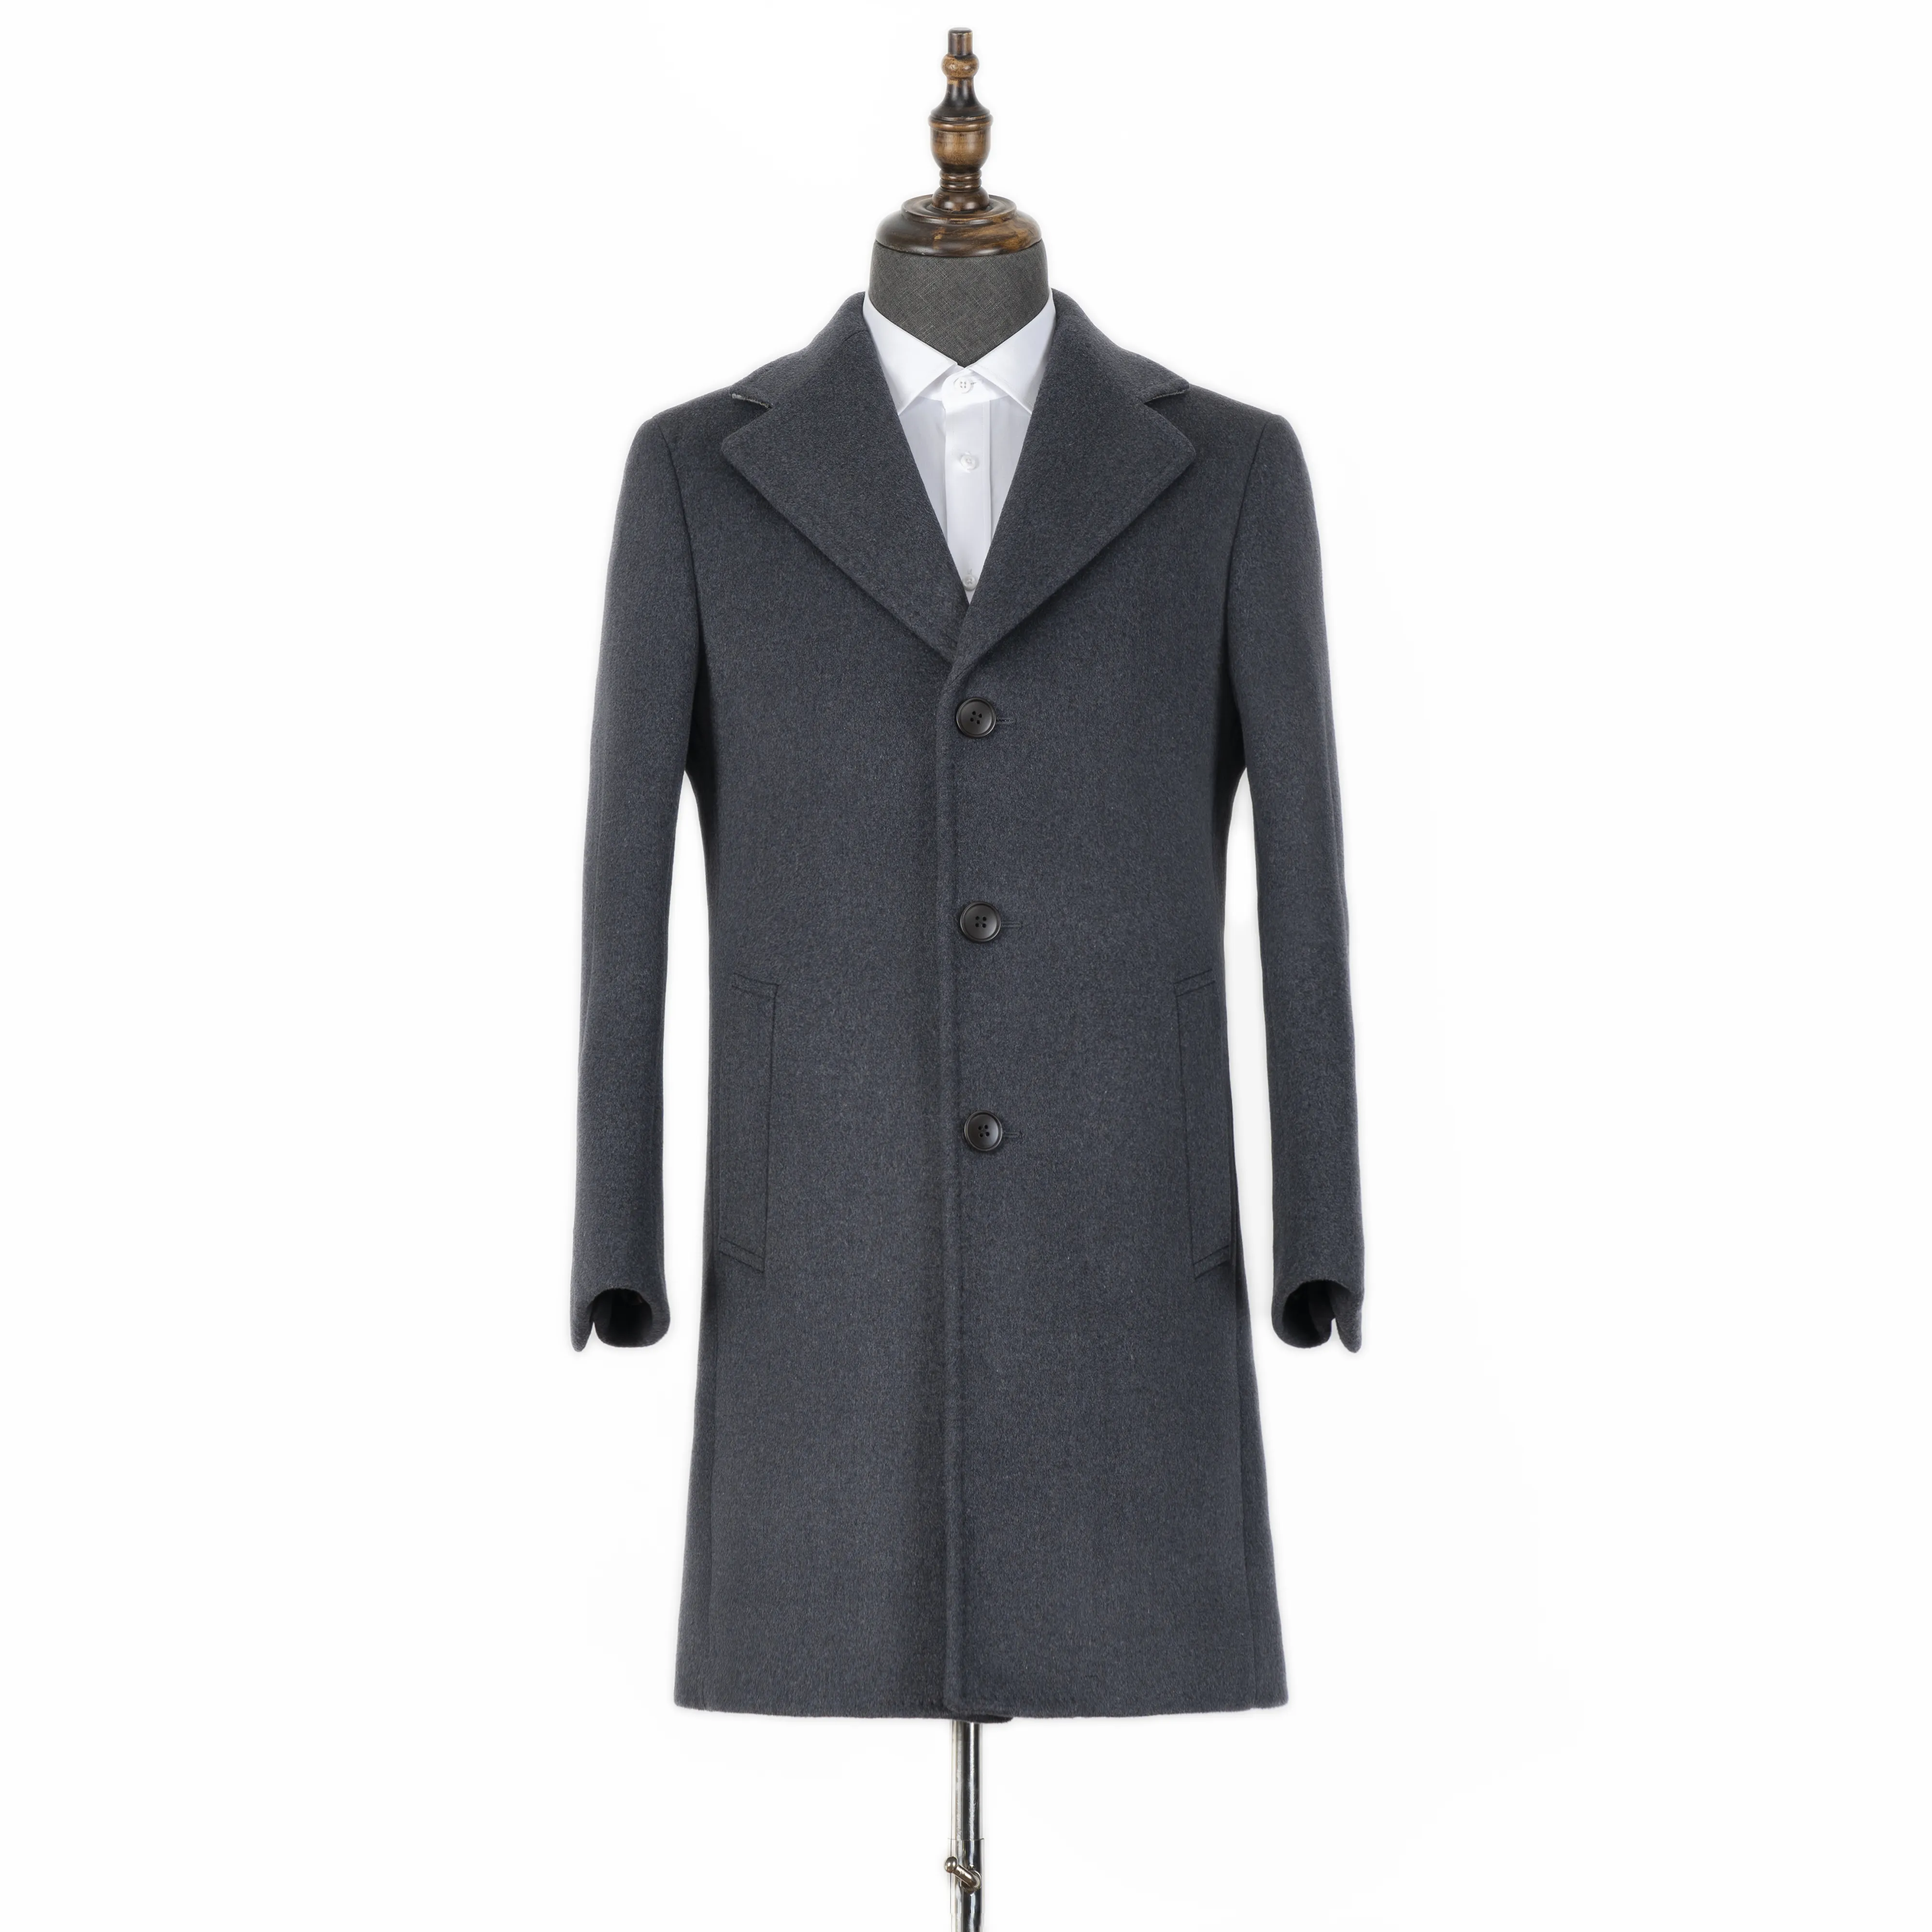 2022 Winter High Quality Drak Gray Peaky Blinder Style Custom Made Overcoat Jacket For Men